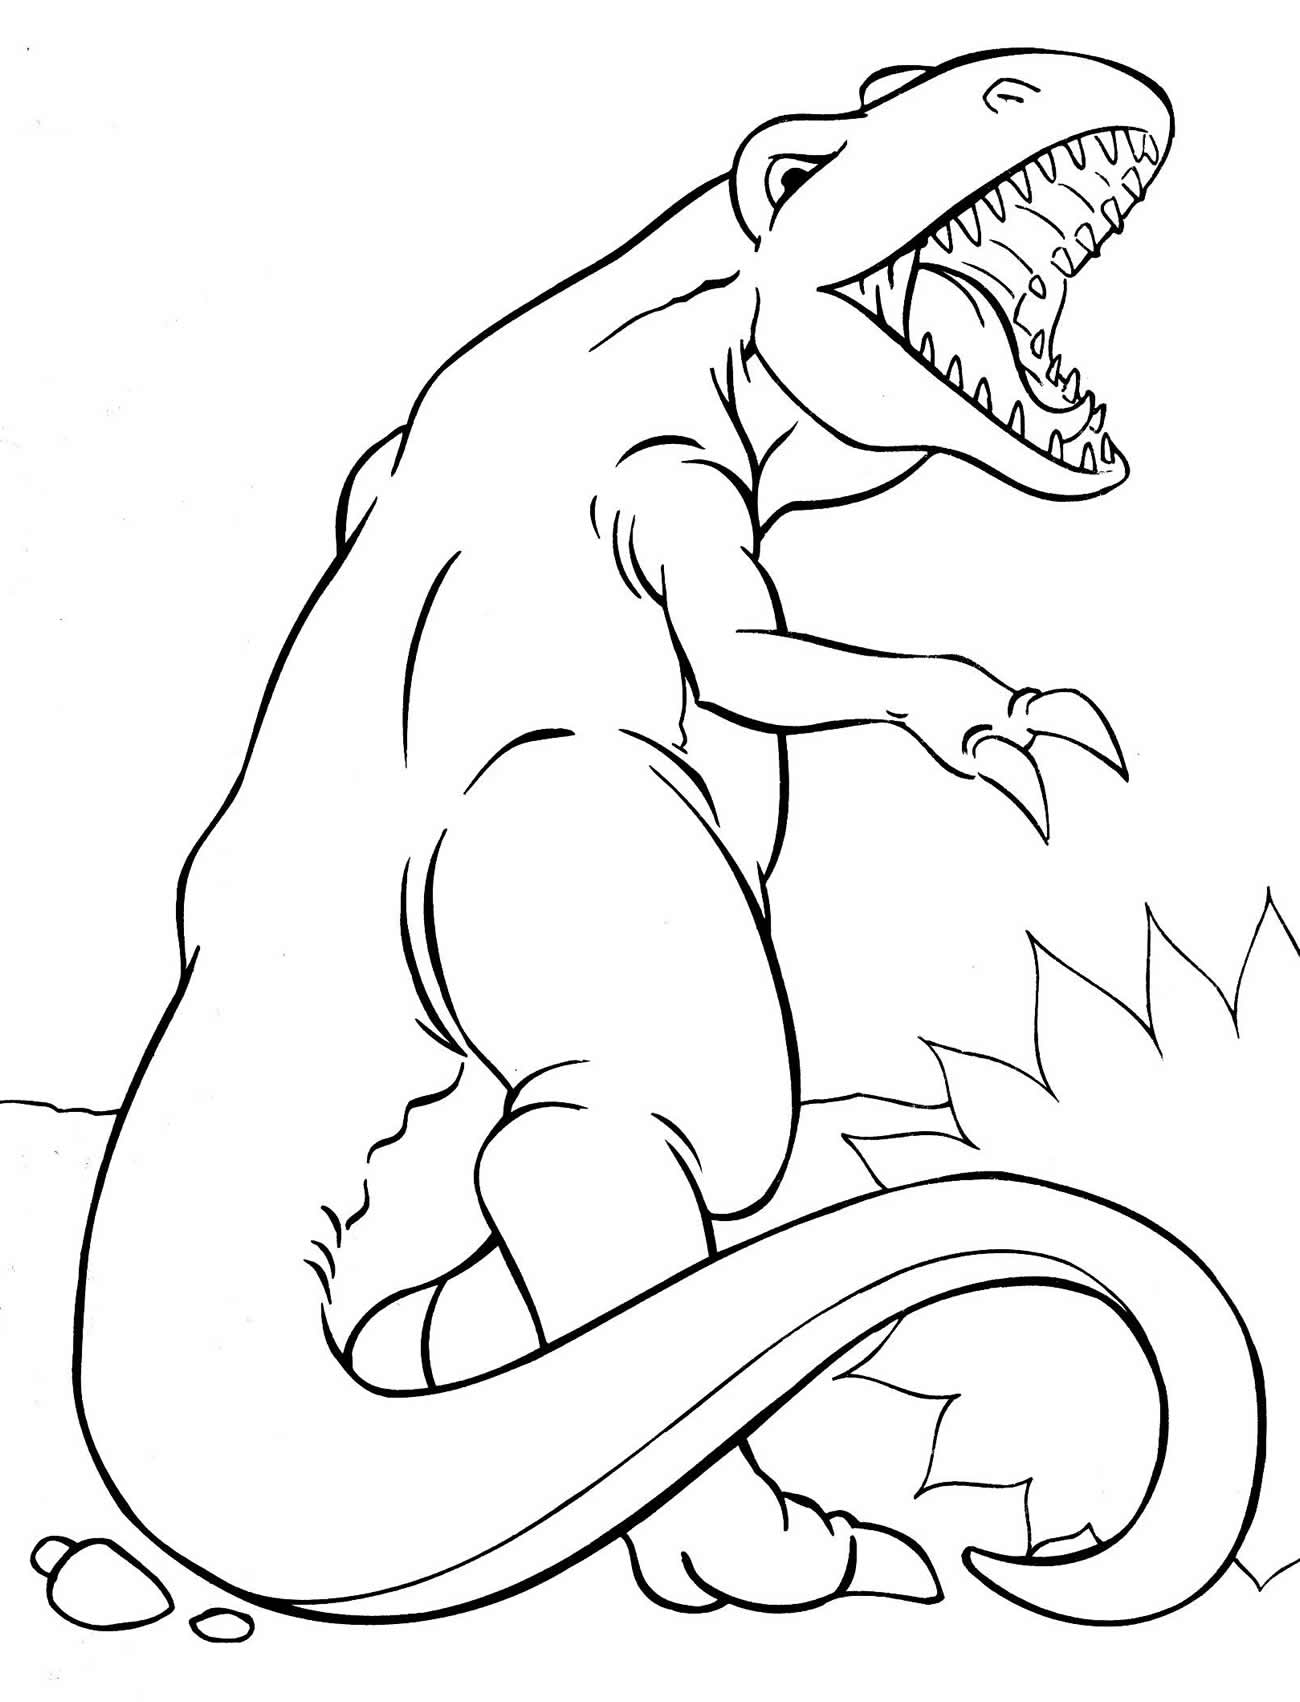 Imagem para pintar de Dinossauro